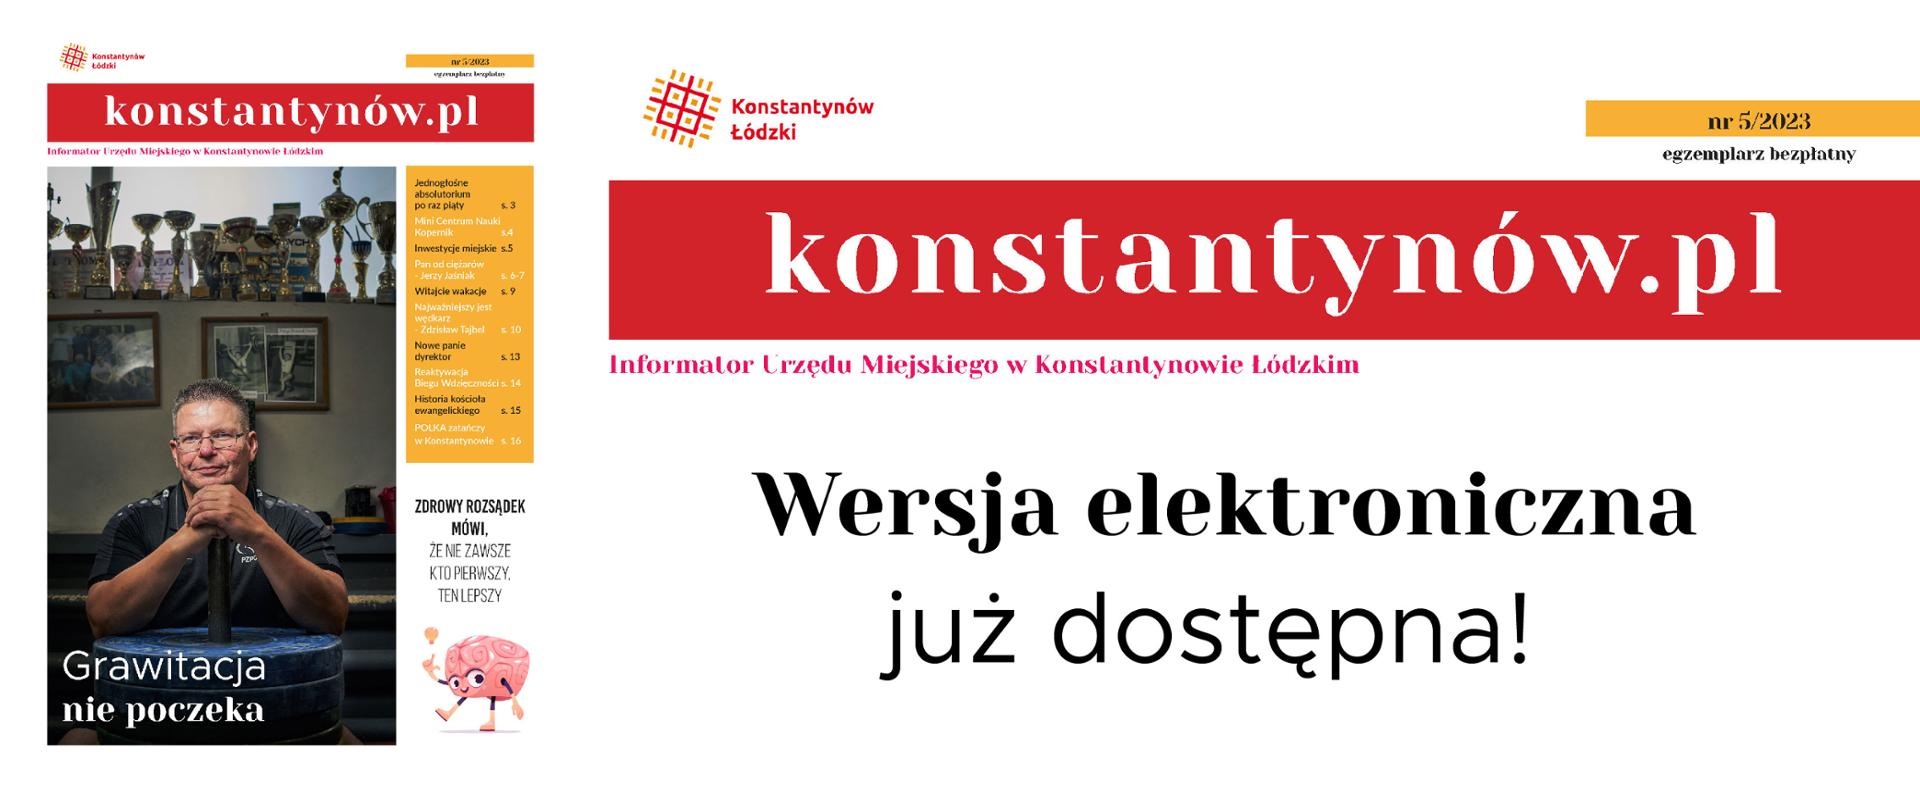 konstantynów.pl wersja elektroniczna już dostępna. Miniaturka okładki.